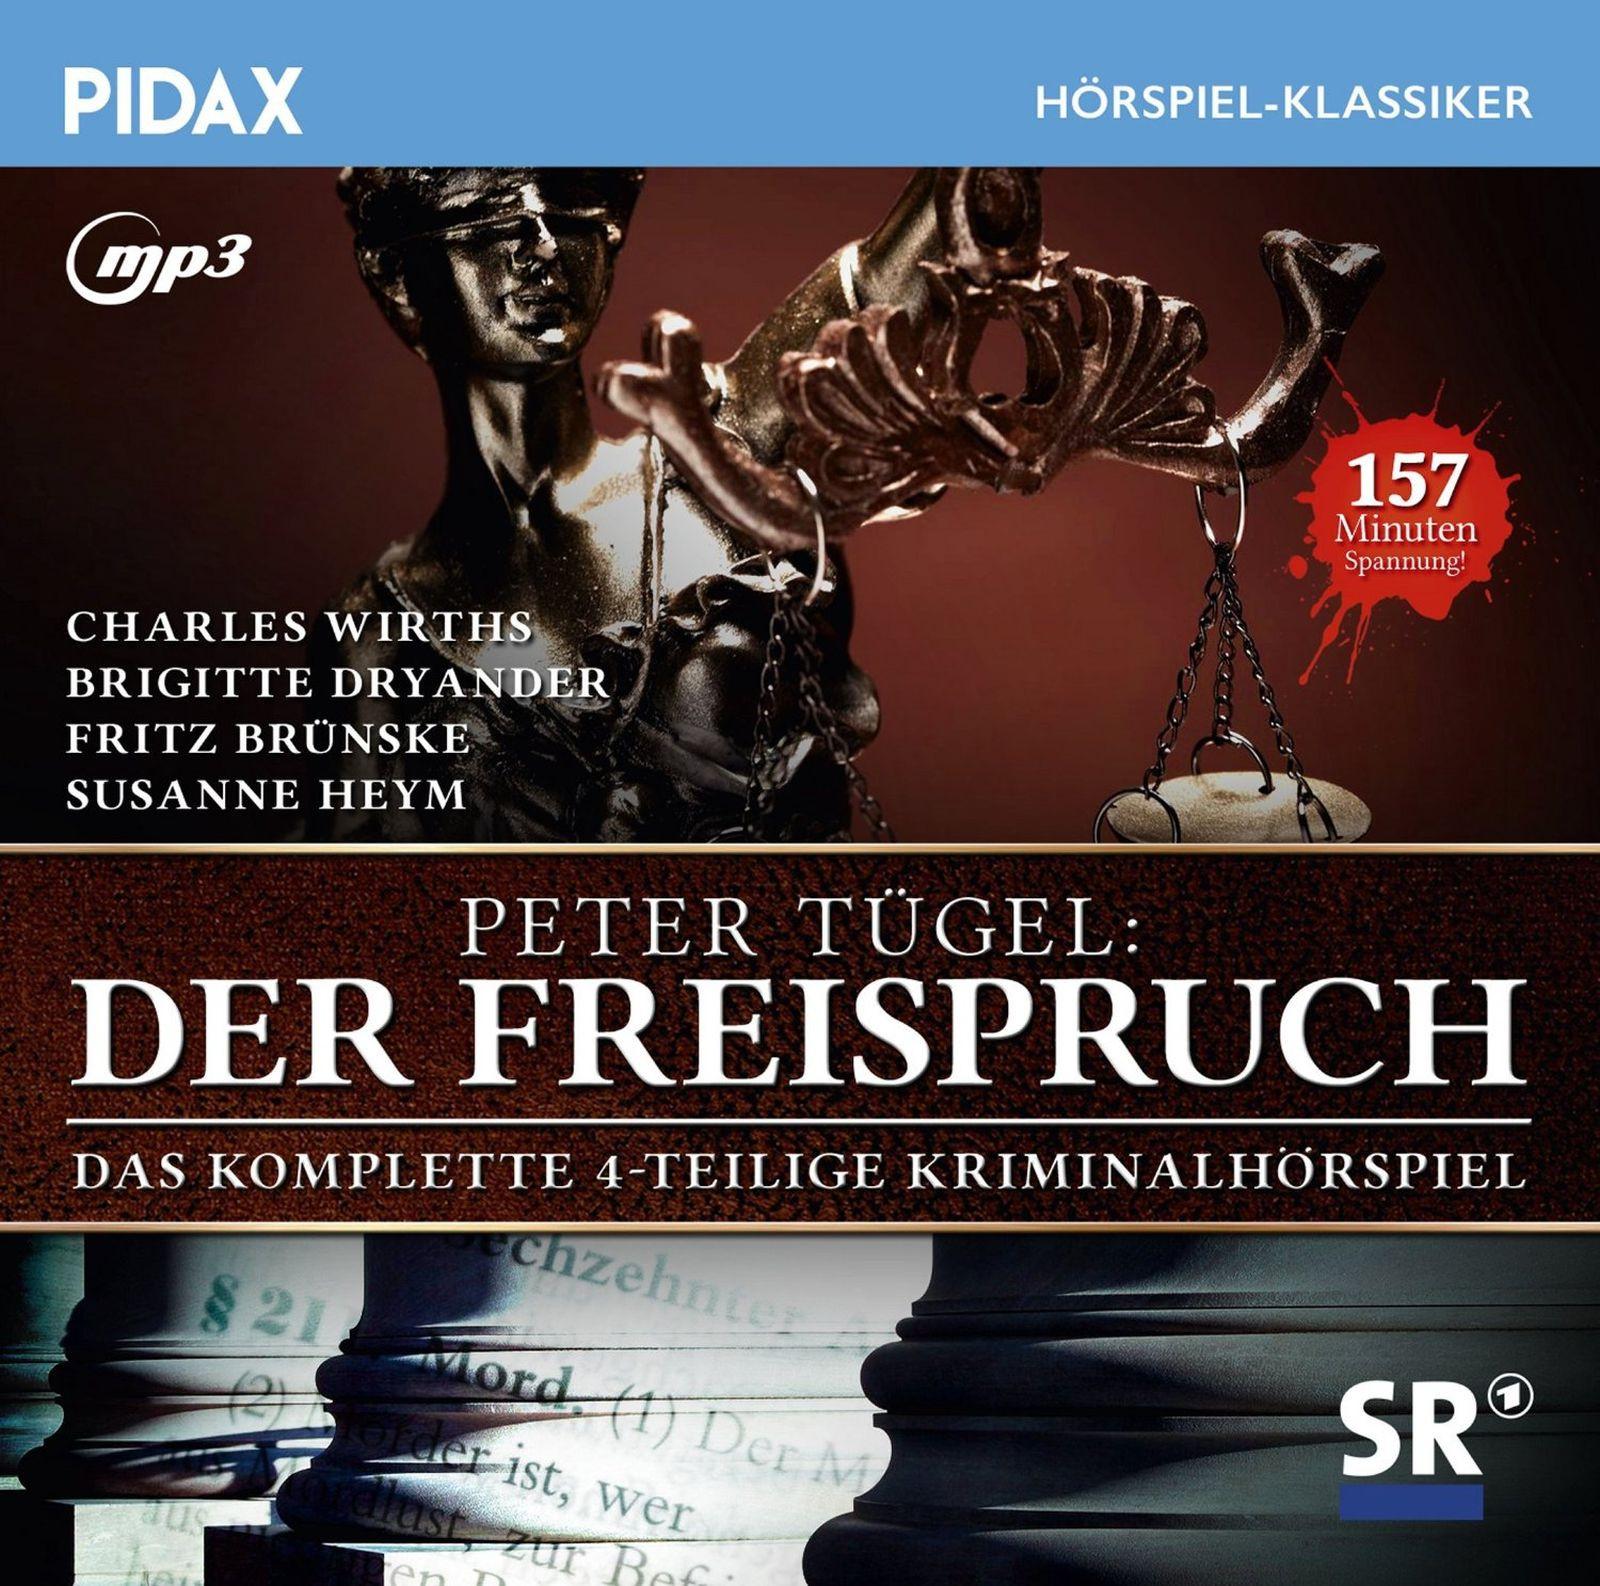 Pidax Hörspiel Klassiker - Der Freispruch